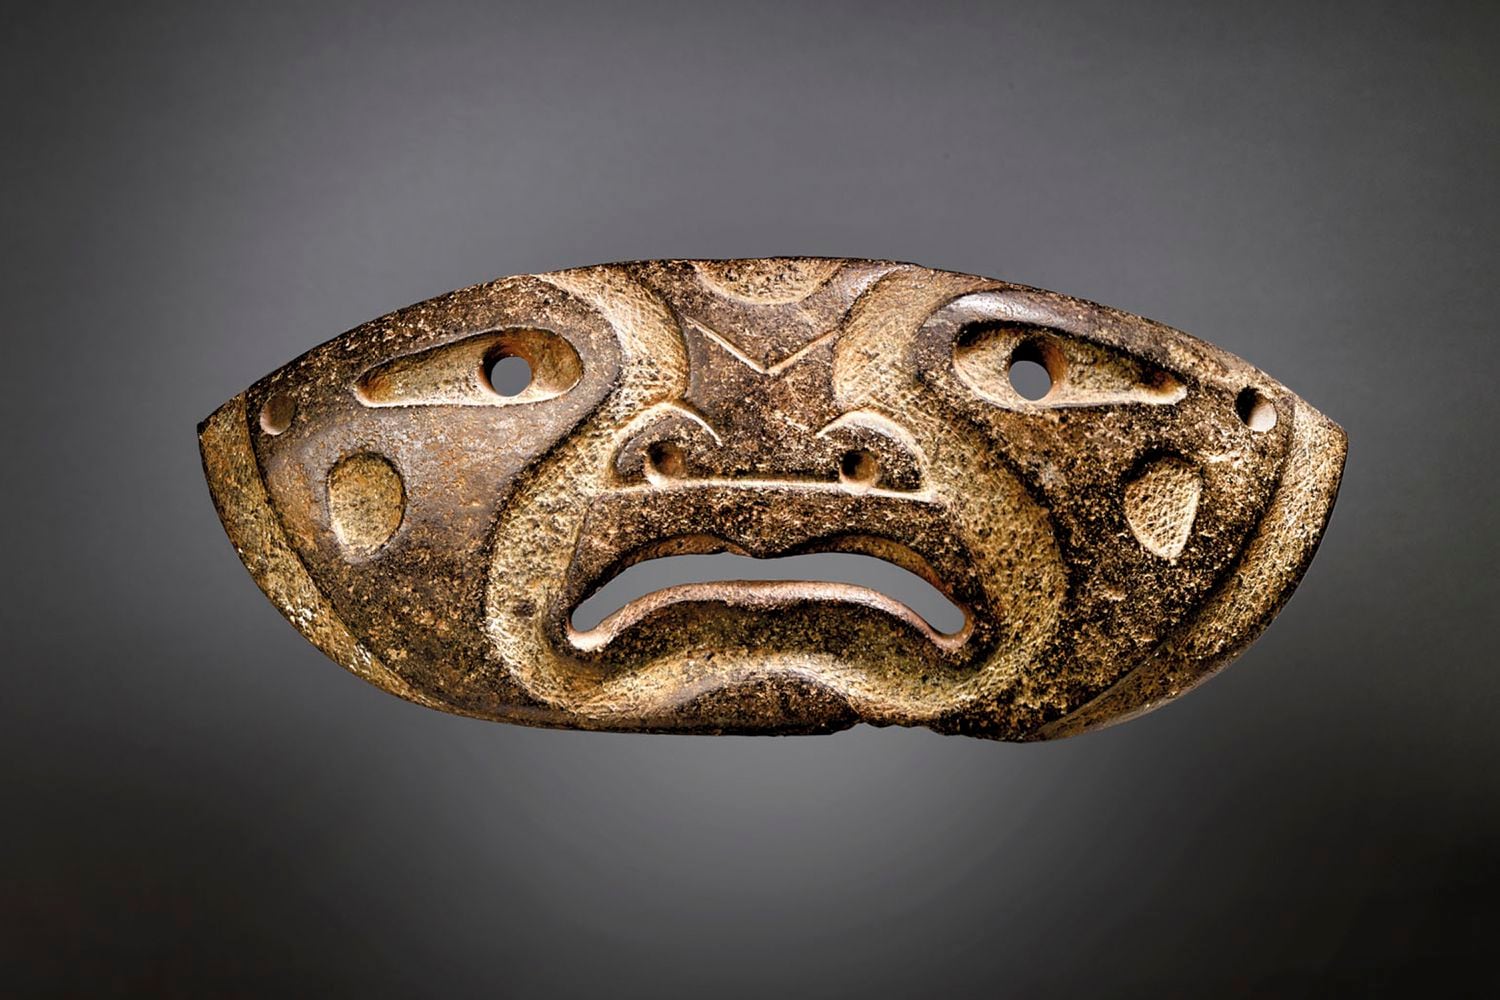 Máscara Xochipala, una de las piezas prehispánicas subastadas por Christie's considerada falsa por el INAH.